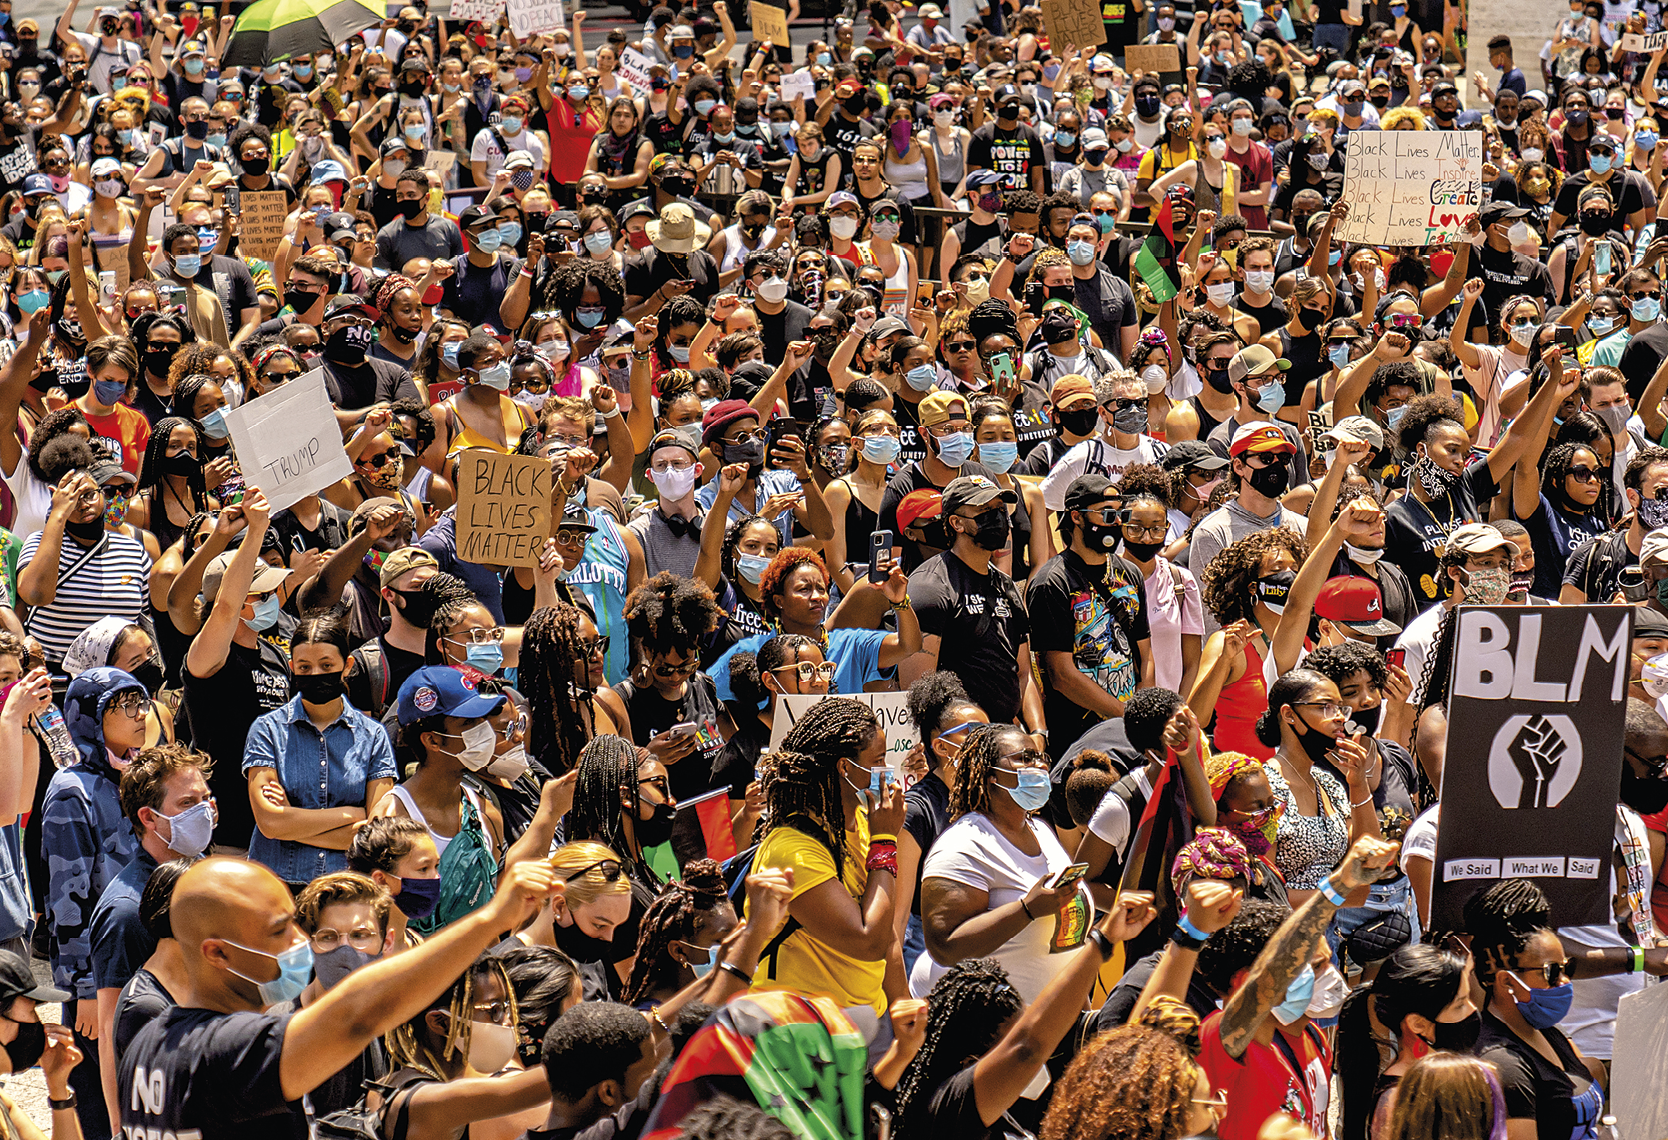 Fotografia. Uma multidão de pessoas reunidas em um dia de sol. Algumas delas usam máscara de proteção sobre nariz e boca; algumas pessoas estão com os braços erguidos e os pulsos fechados e outras seguram cartazes com os dizeres 'Black Lives Matter'.